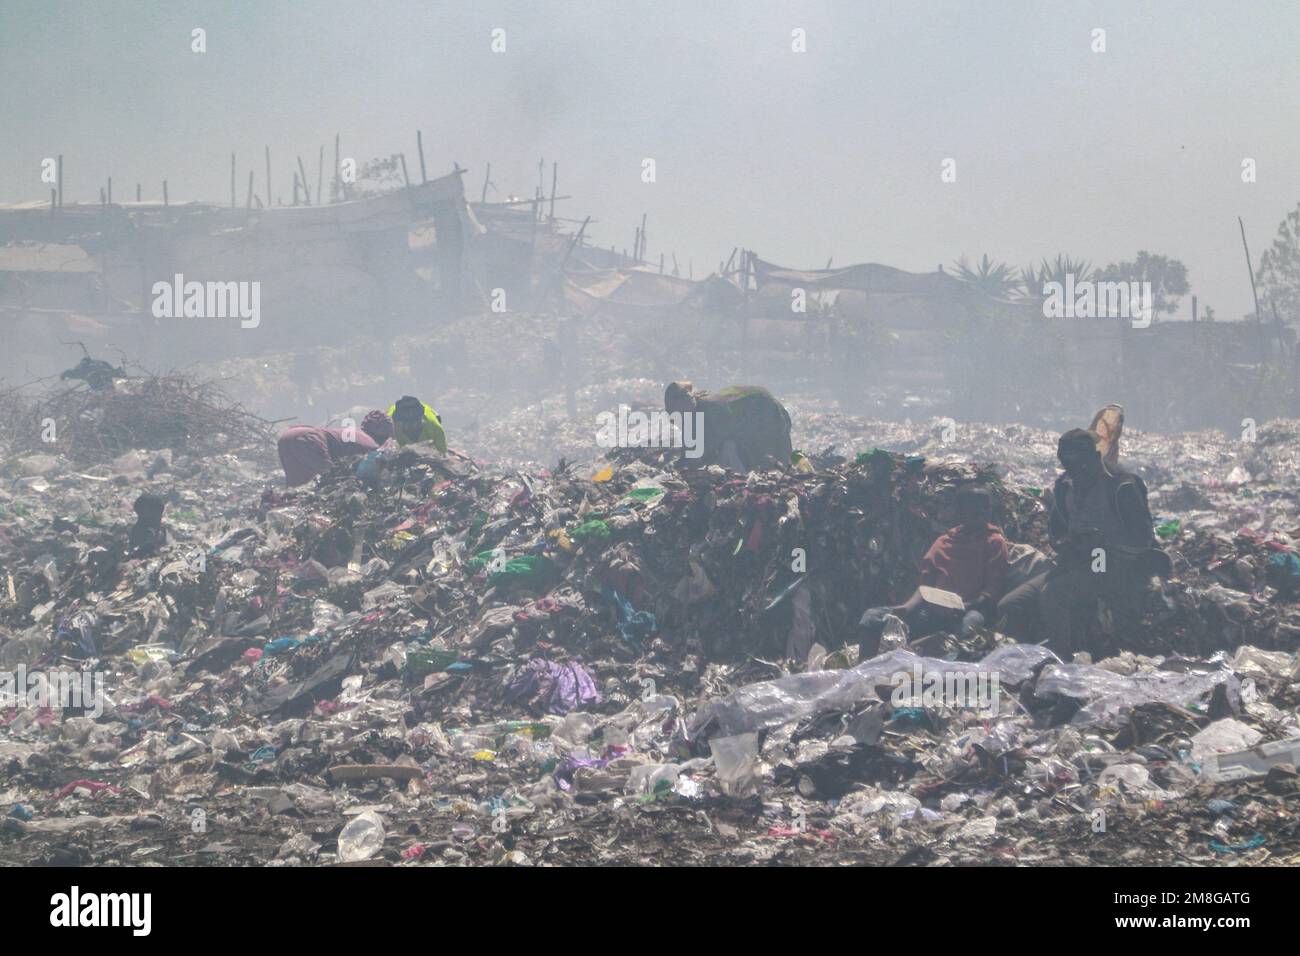 Müllsammler sammeln Abfälle, um sie in starkem Rauch zu recyceln, indem sie Müll auf dem Hauptlagerplatz von Nakuru verbrennen. Da Abfälle selten getrennt und stark mit allen Arten von Abfall vermischt werden, kann das Verbrennen potenziell giftige Dämpfe erzeugen, die ein Problem für die öffentliche Gesundheit darstellen und auch zum Klimawandel beitragen können. Gemeinden, die in der Nähe von Mülldeponien arbeiten und leben, wo Müll offen verbrannt wird, sind dem Risiko von Atemwegserkrankungen und Krebs ausgesetzt. Frauen, die diesen Dämpfen ausgesetzt sind, können unter reproduktiven Gesundheitsproblemen leiden. Stockfoto